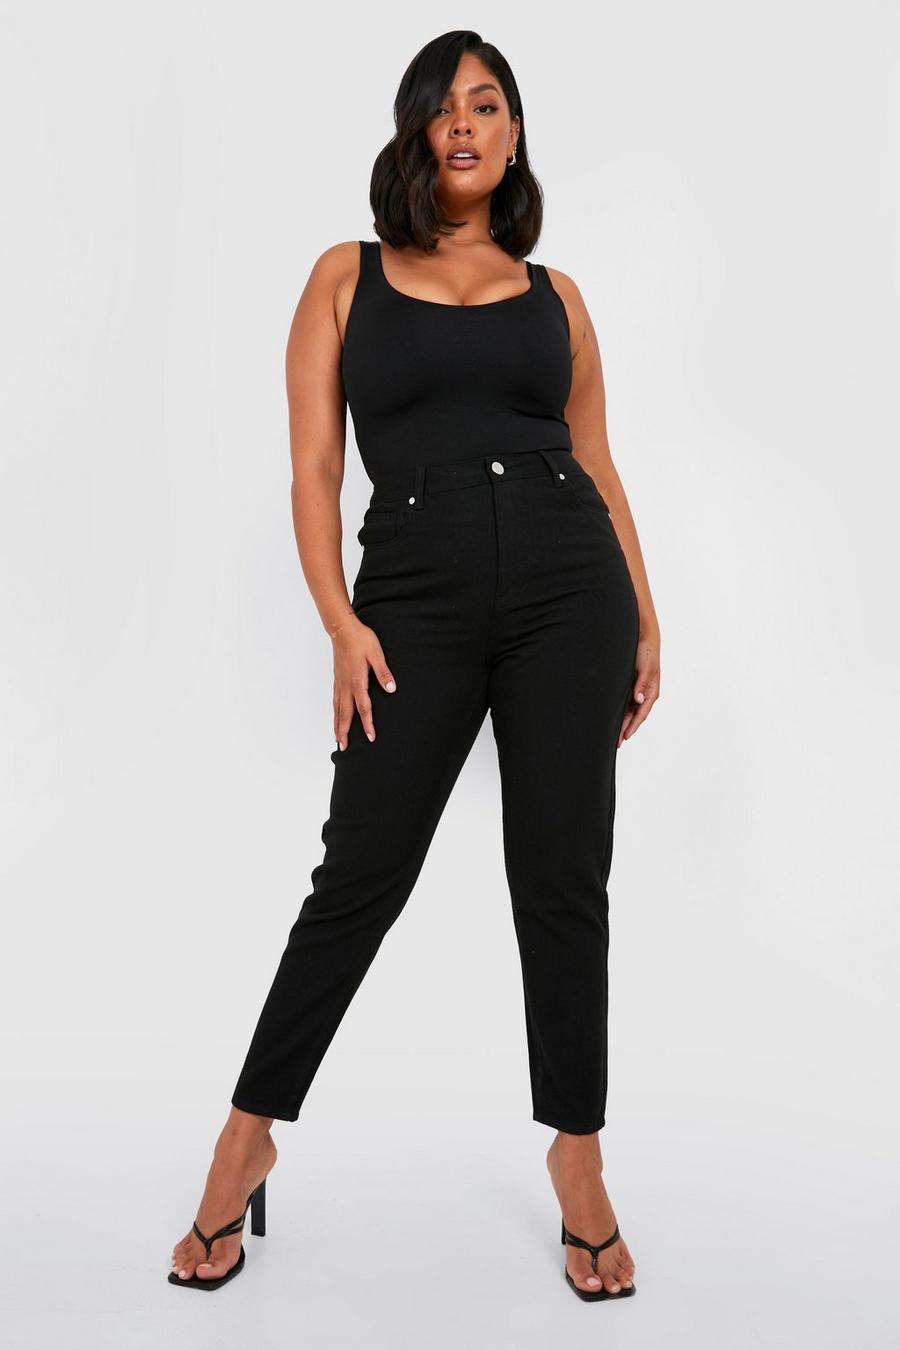 שחור nero ג'ינס בגזרת מאם high waist מידות גדולות